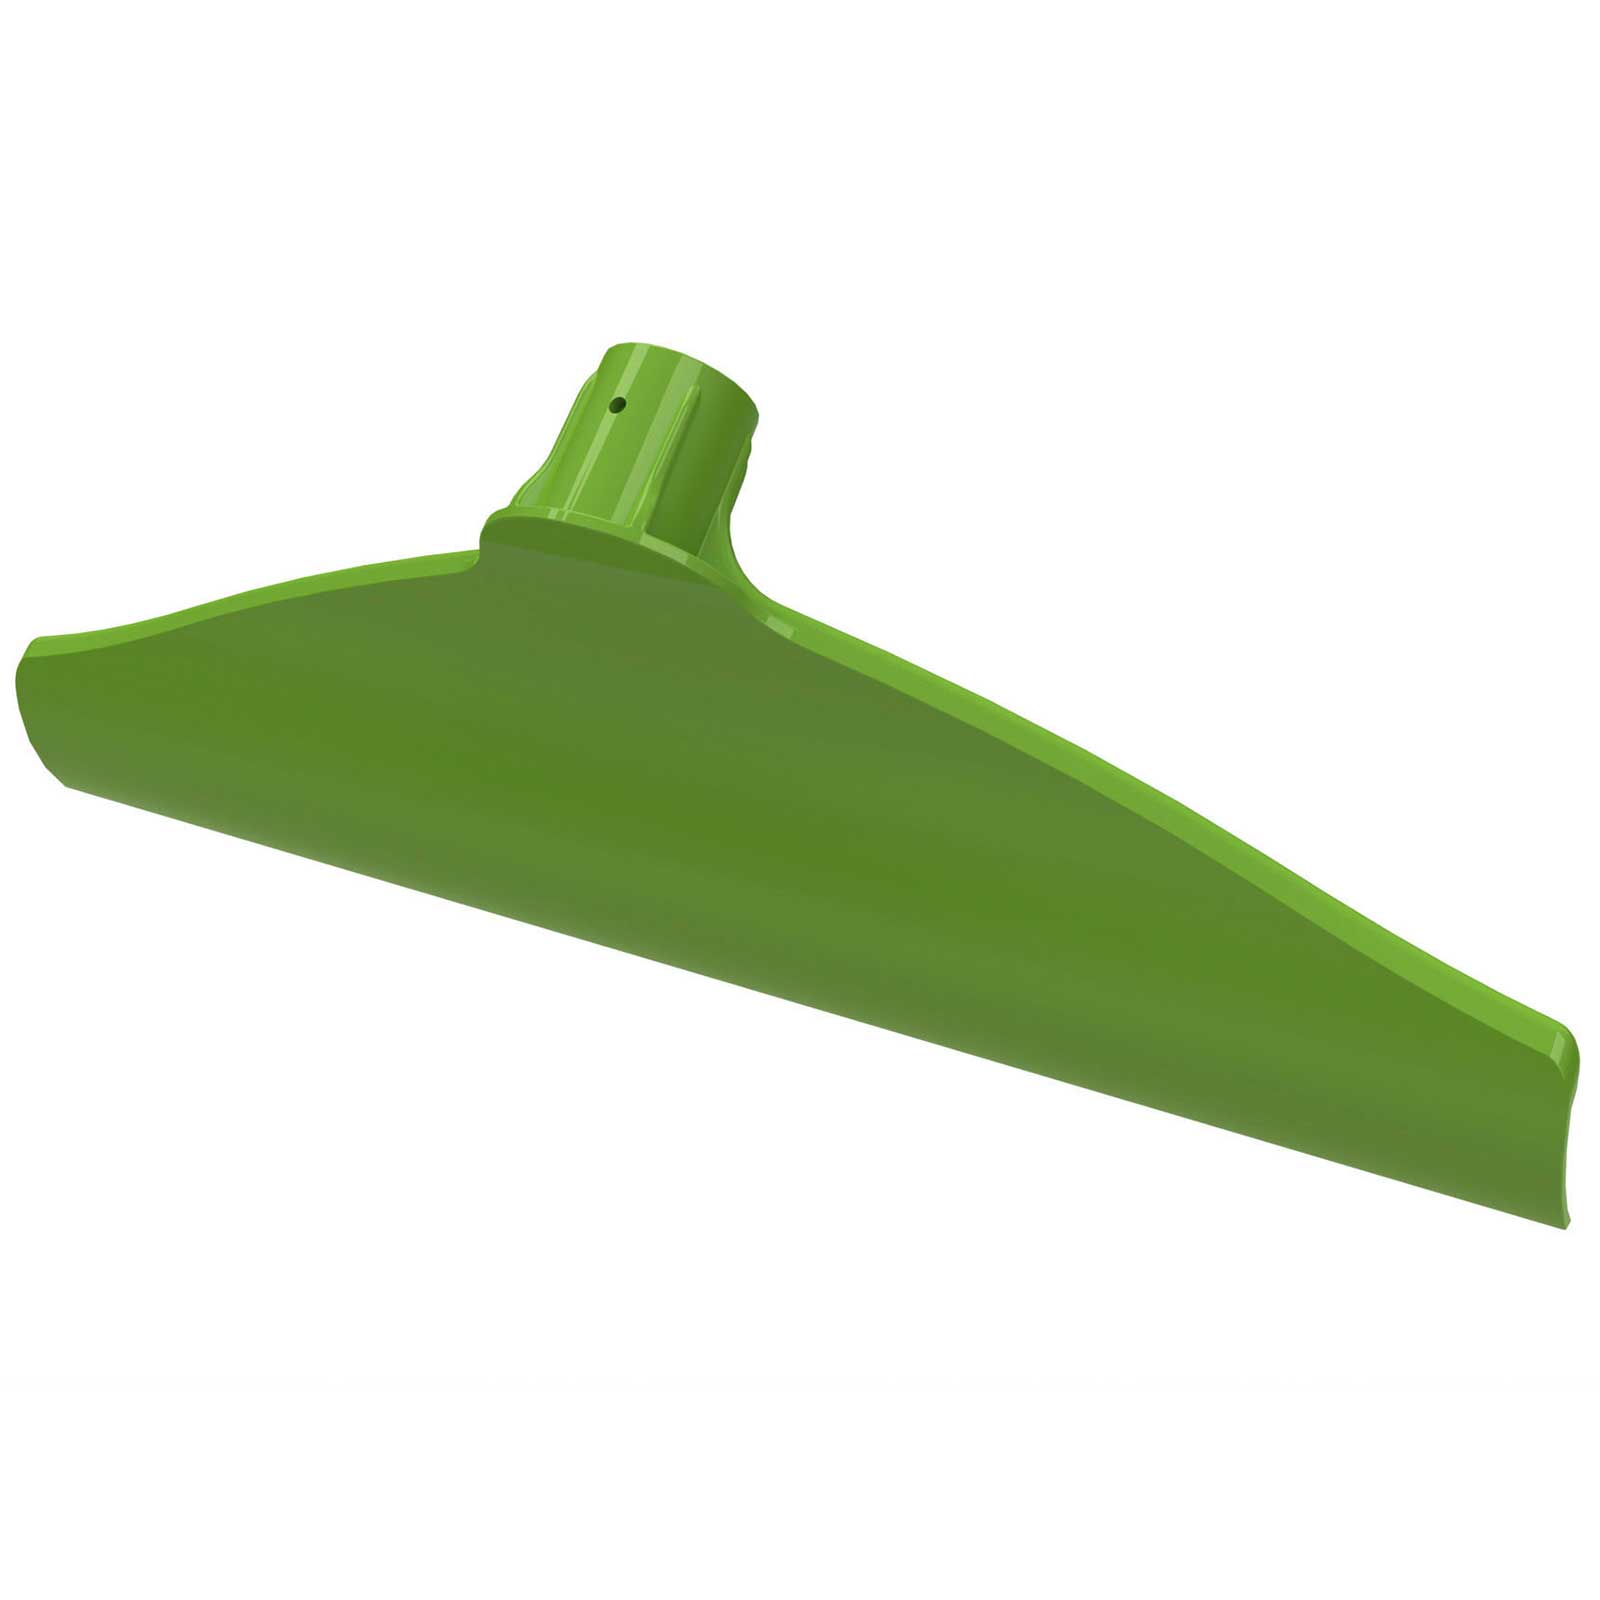 Manure scraper plastic Green